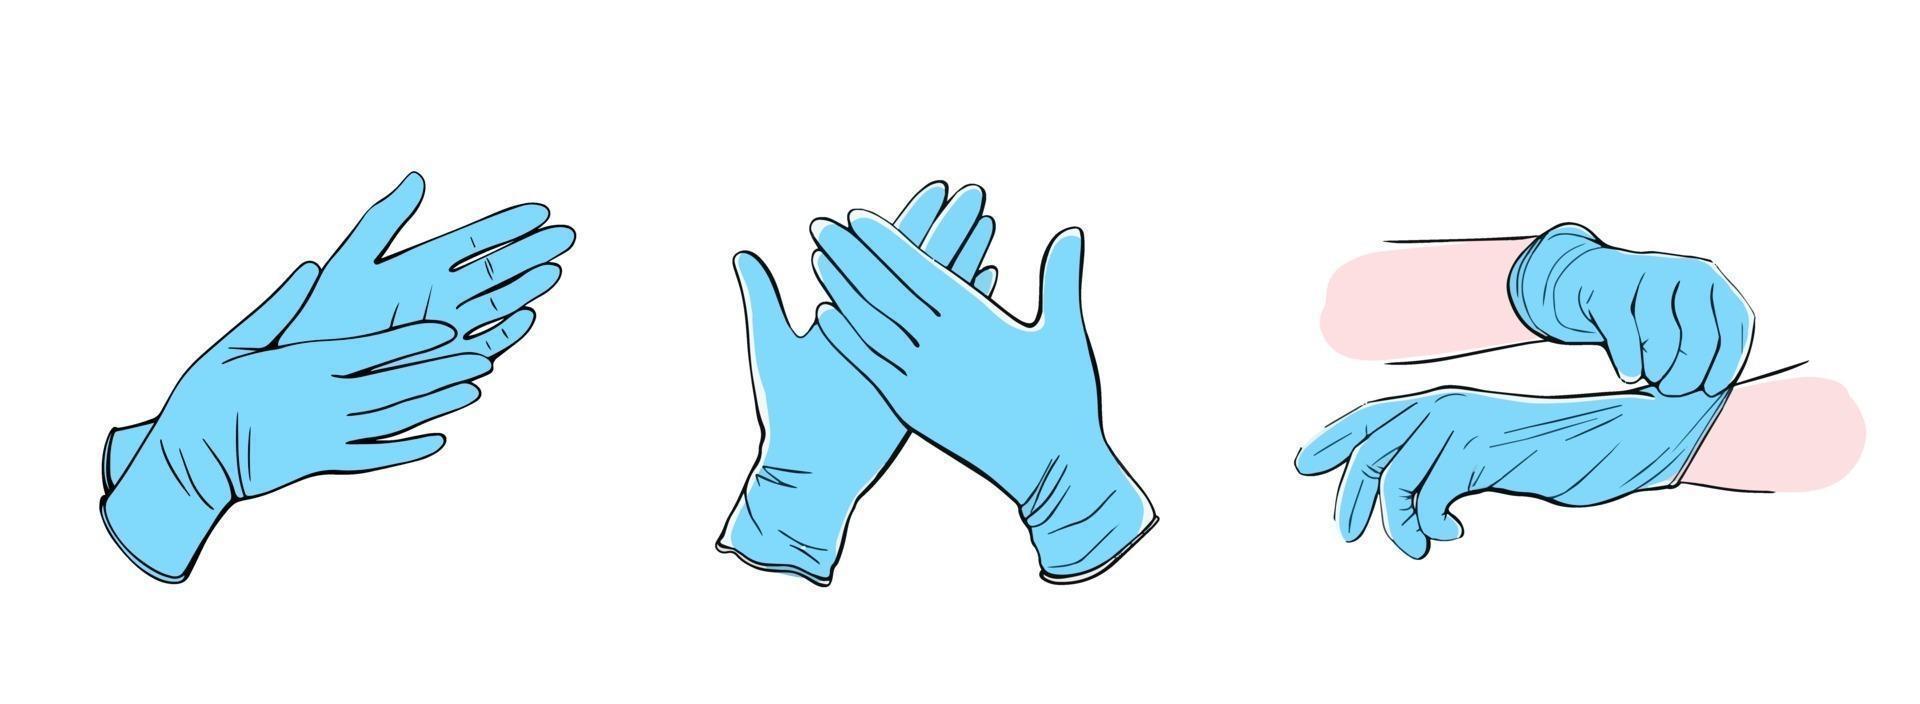 gants de protection médicale isolés sur fond blanc. illustration vectorielle dessinée à la main dans le style doodle vecteur